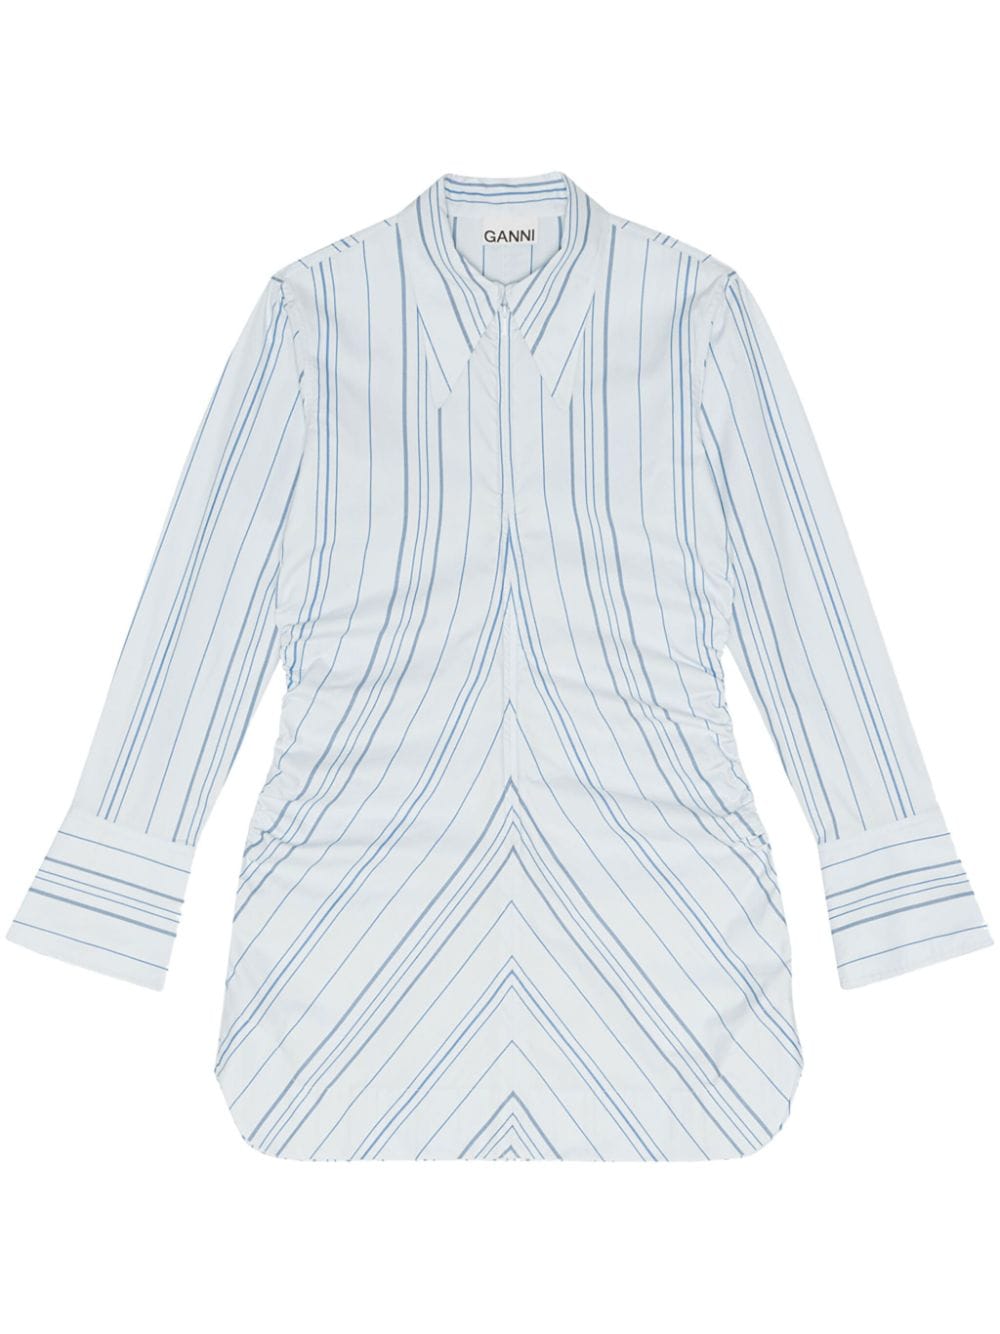 GANNI striped shirt dress - White